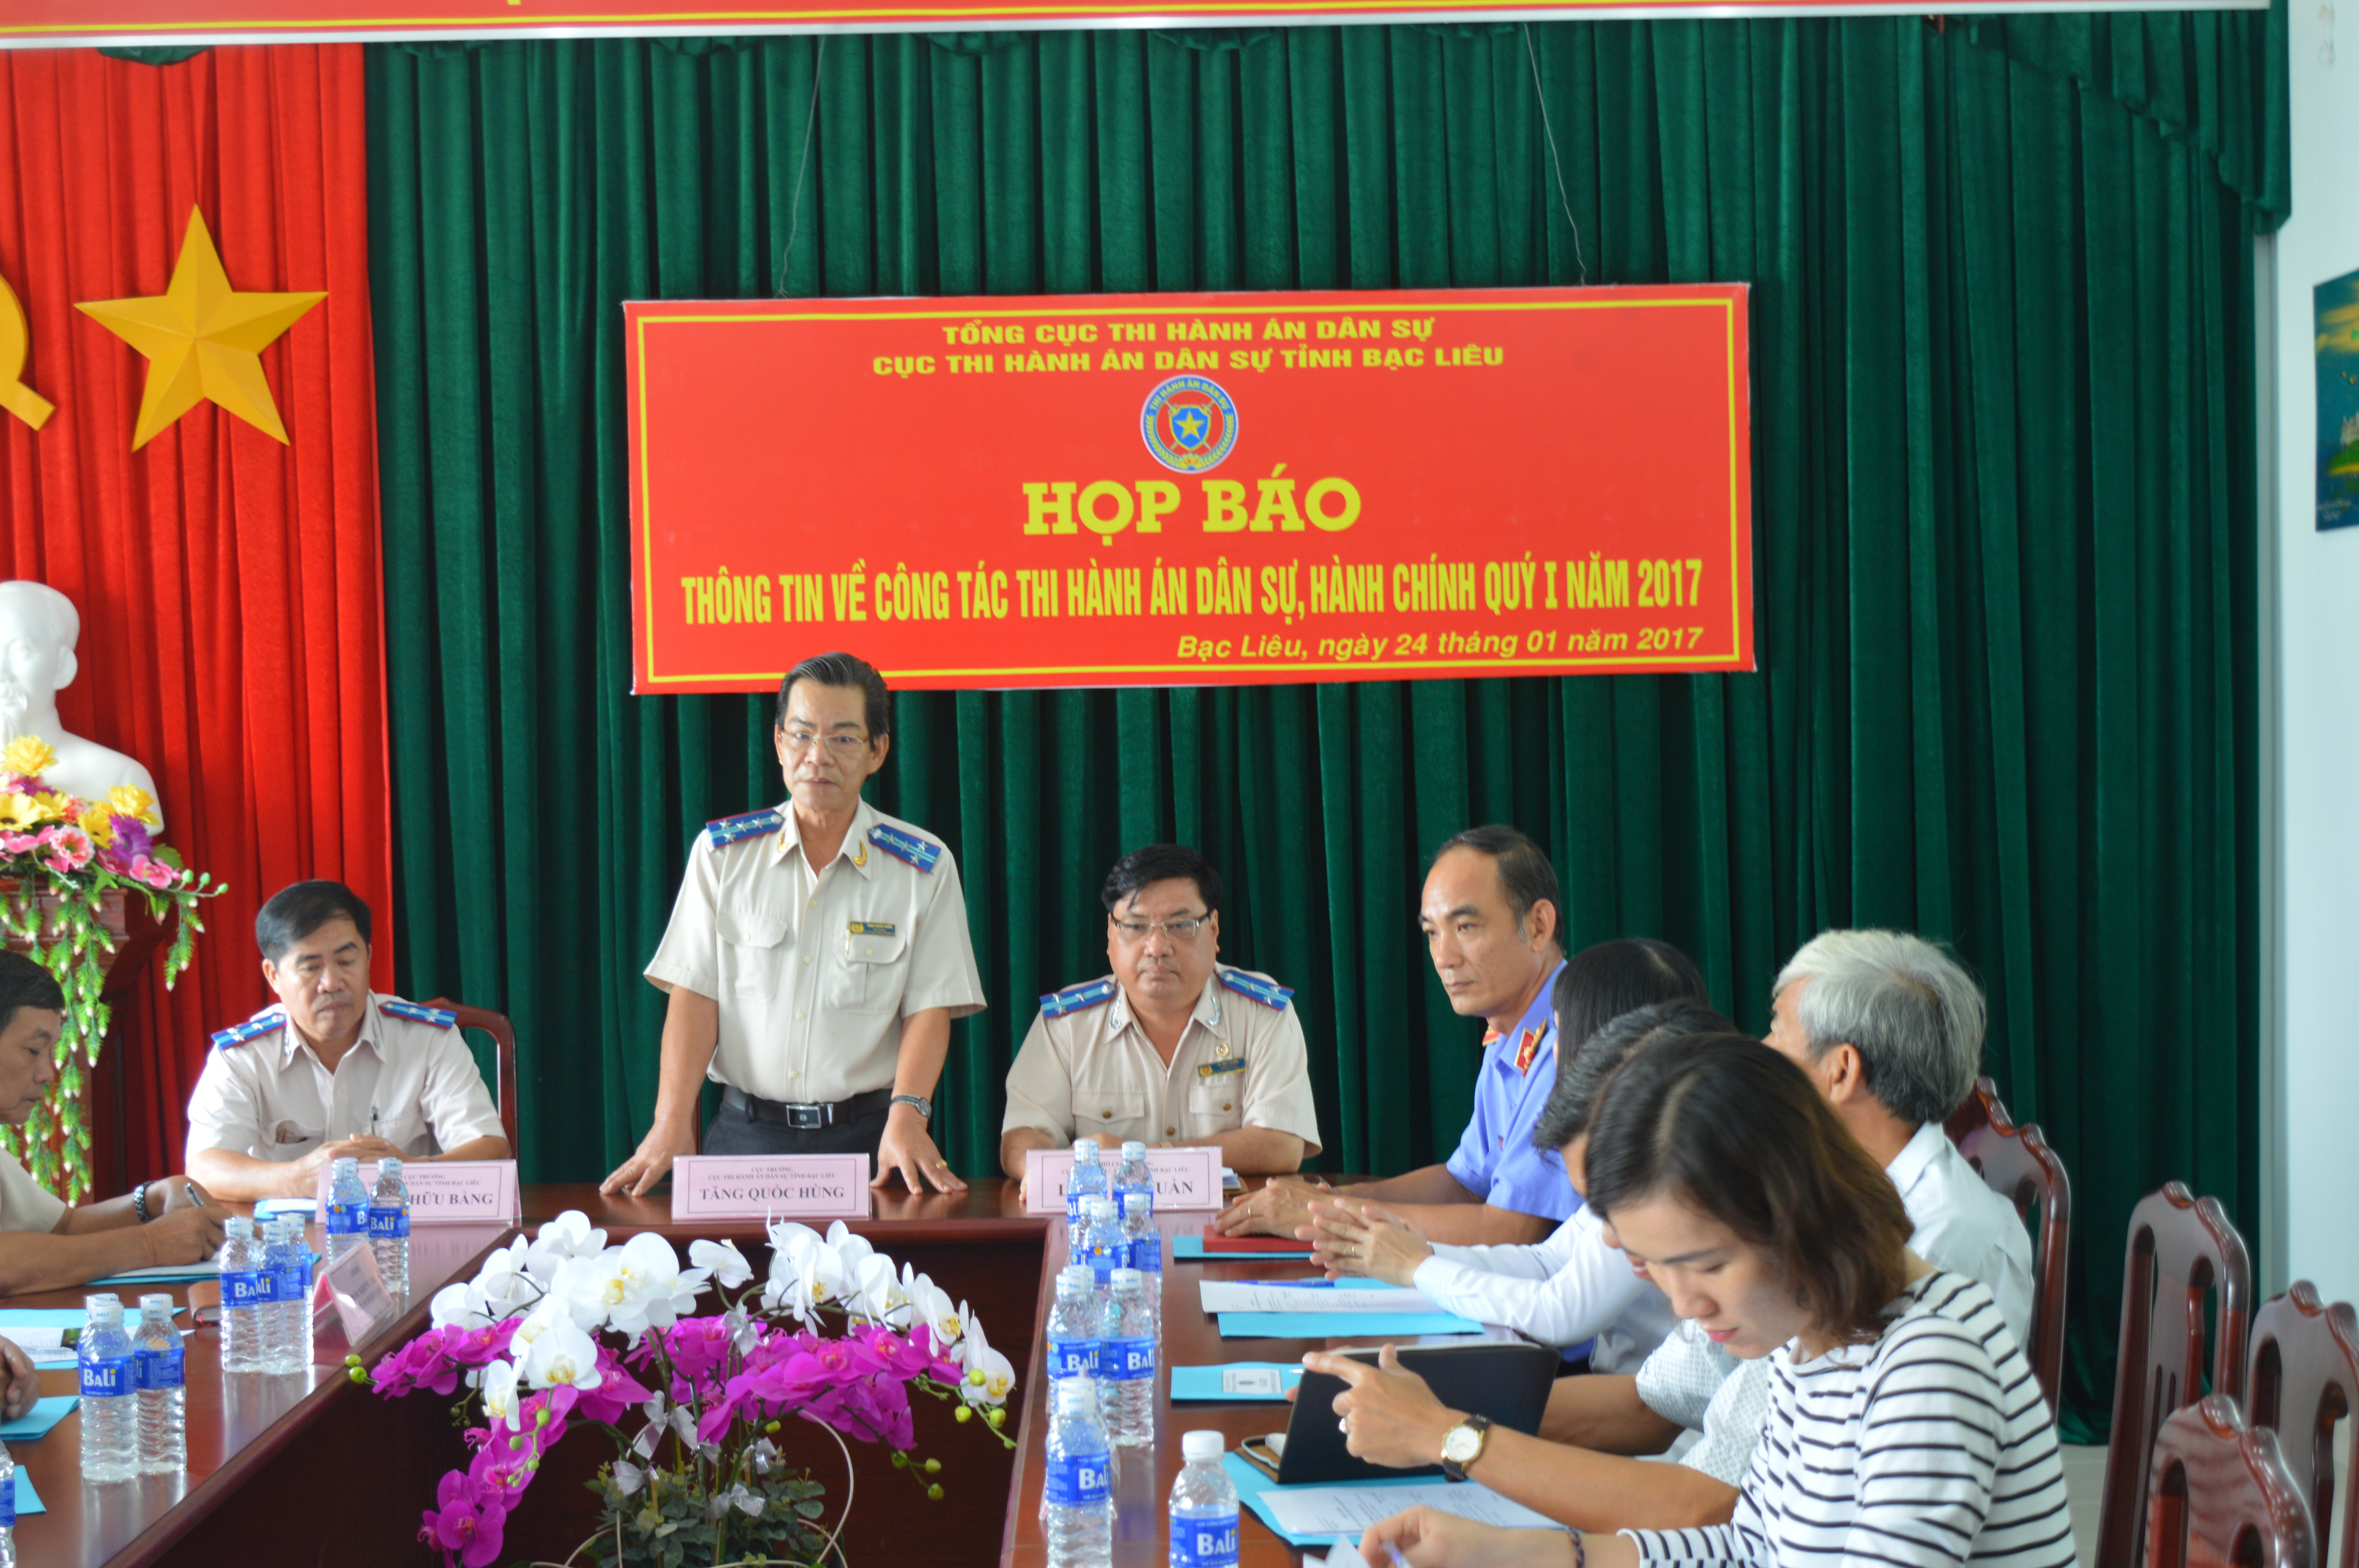 Cục Thi hành án dân sự tỉnh Bạc Liêu tổ chức họp báo công tác thi hành án dân sự, hành chính Quý I/2017